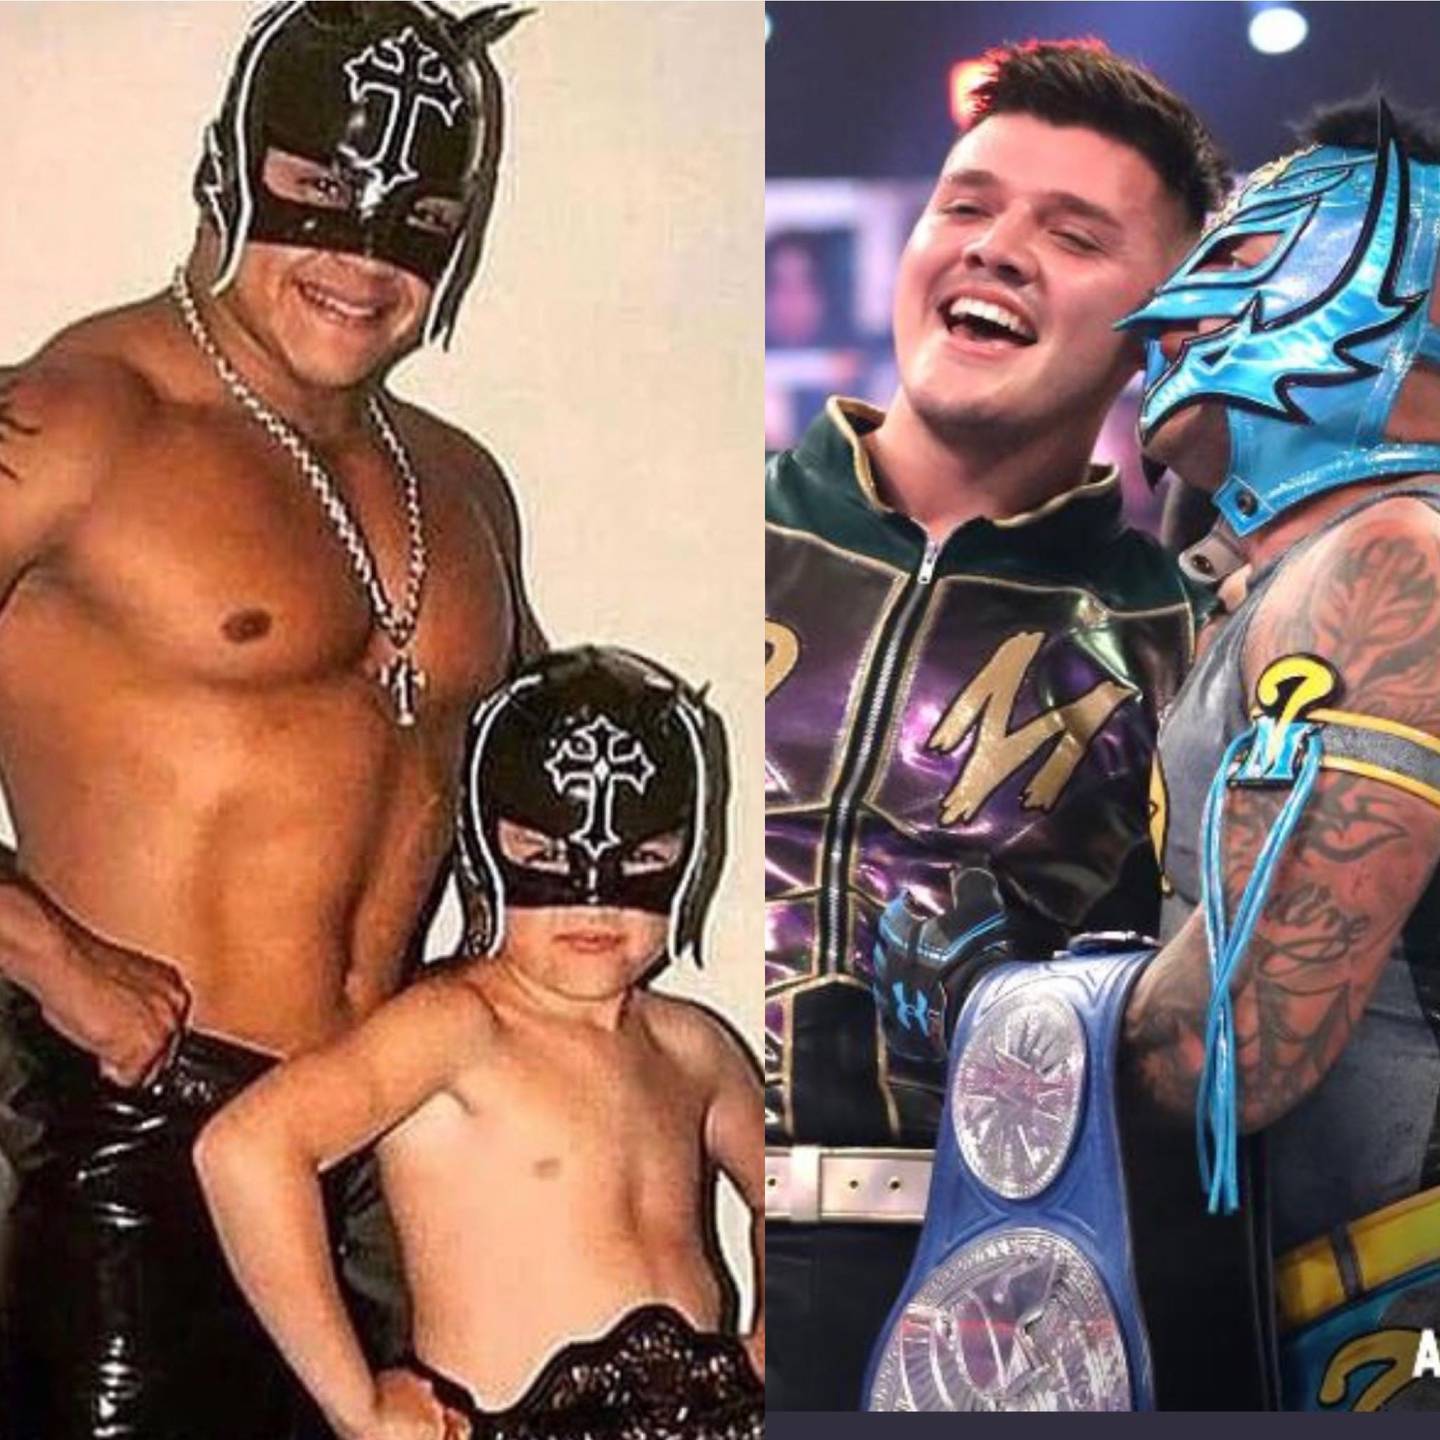 El dueño del 619 y su hijo Dominik, lograron conquistar los títulos en parejas de SmackDown y se convierten en la primera dupla en la historia de la WWE conformada por padre e hijo en ser los monarcas. Twitter.